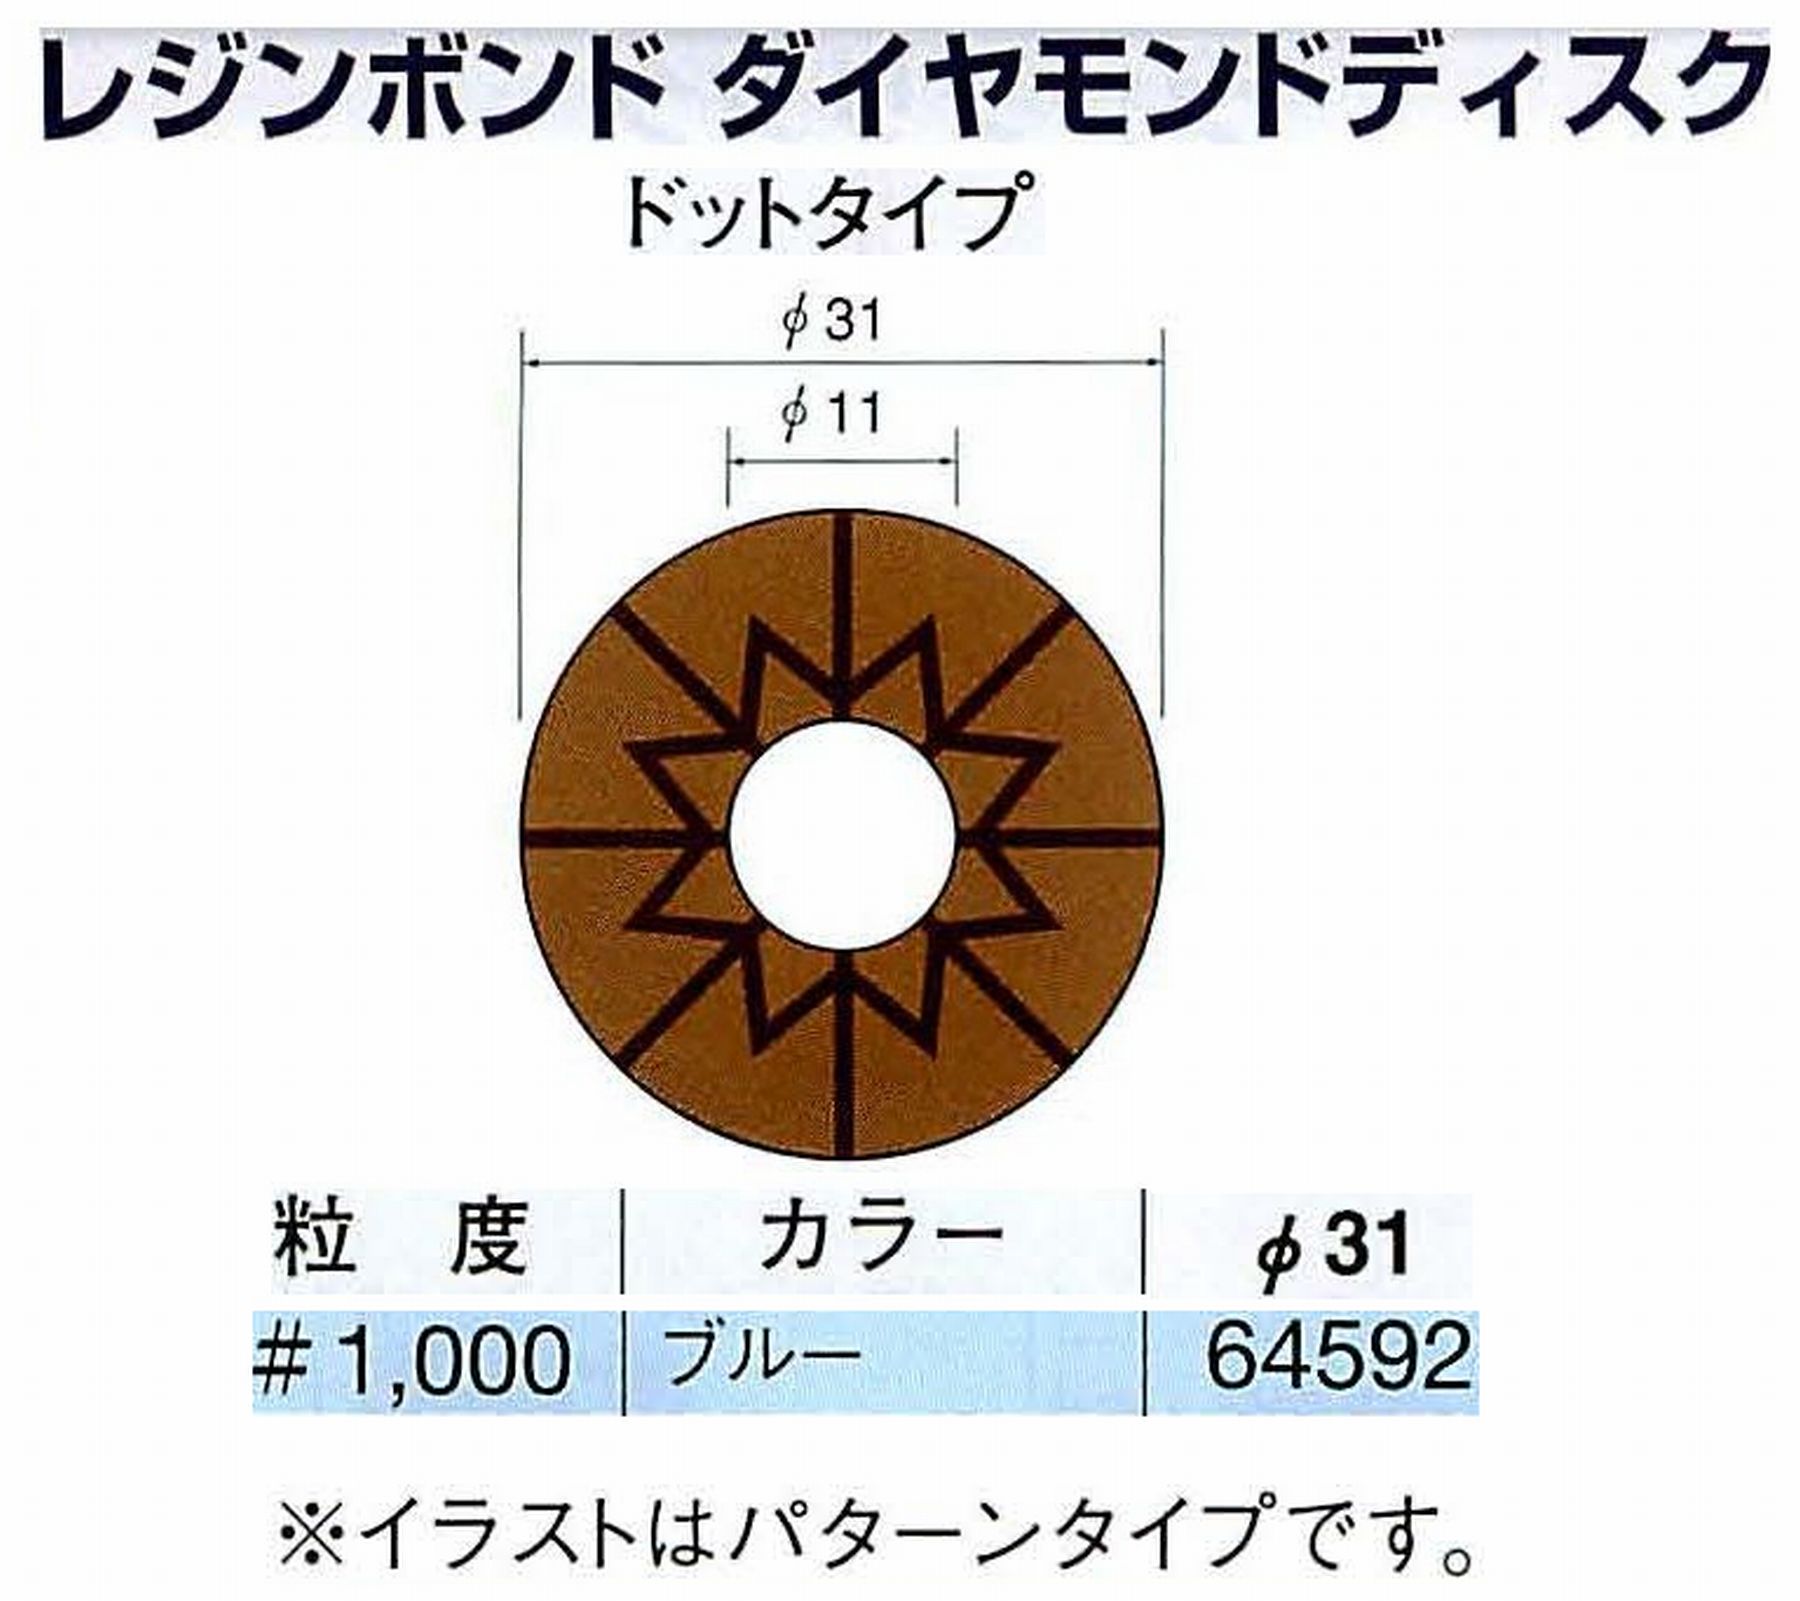 ナカニシ/NAKANISHI アングルグラインダ(電動・エアー) アングルアタッチメント専用工具 レジンボンド ダイヤモンドディスク(ドットタイプ) 64592